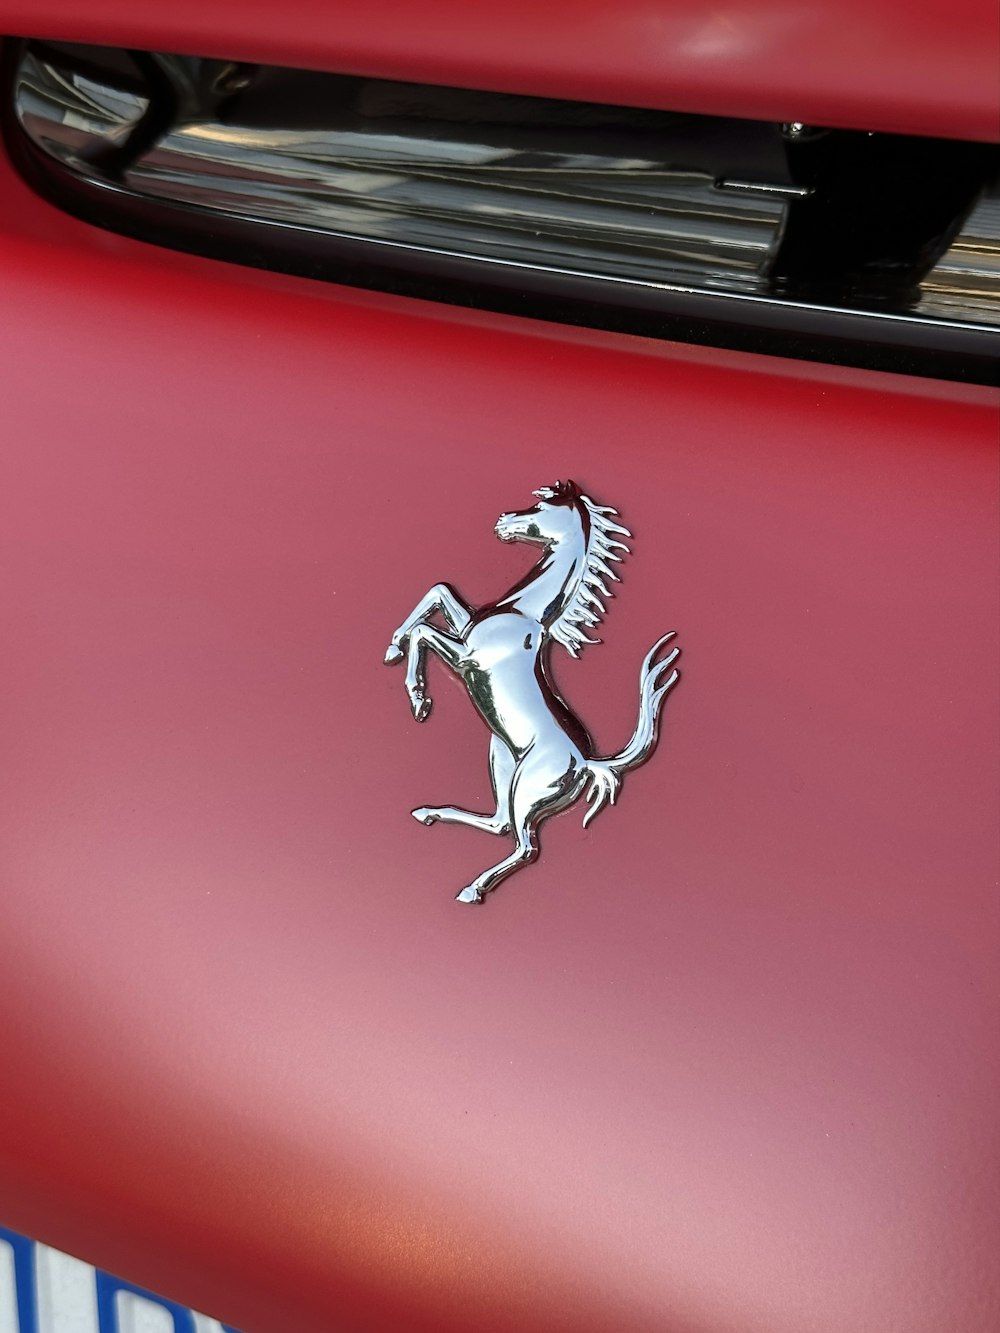 L’emblème à l’avant d’une voiture rouge